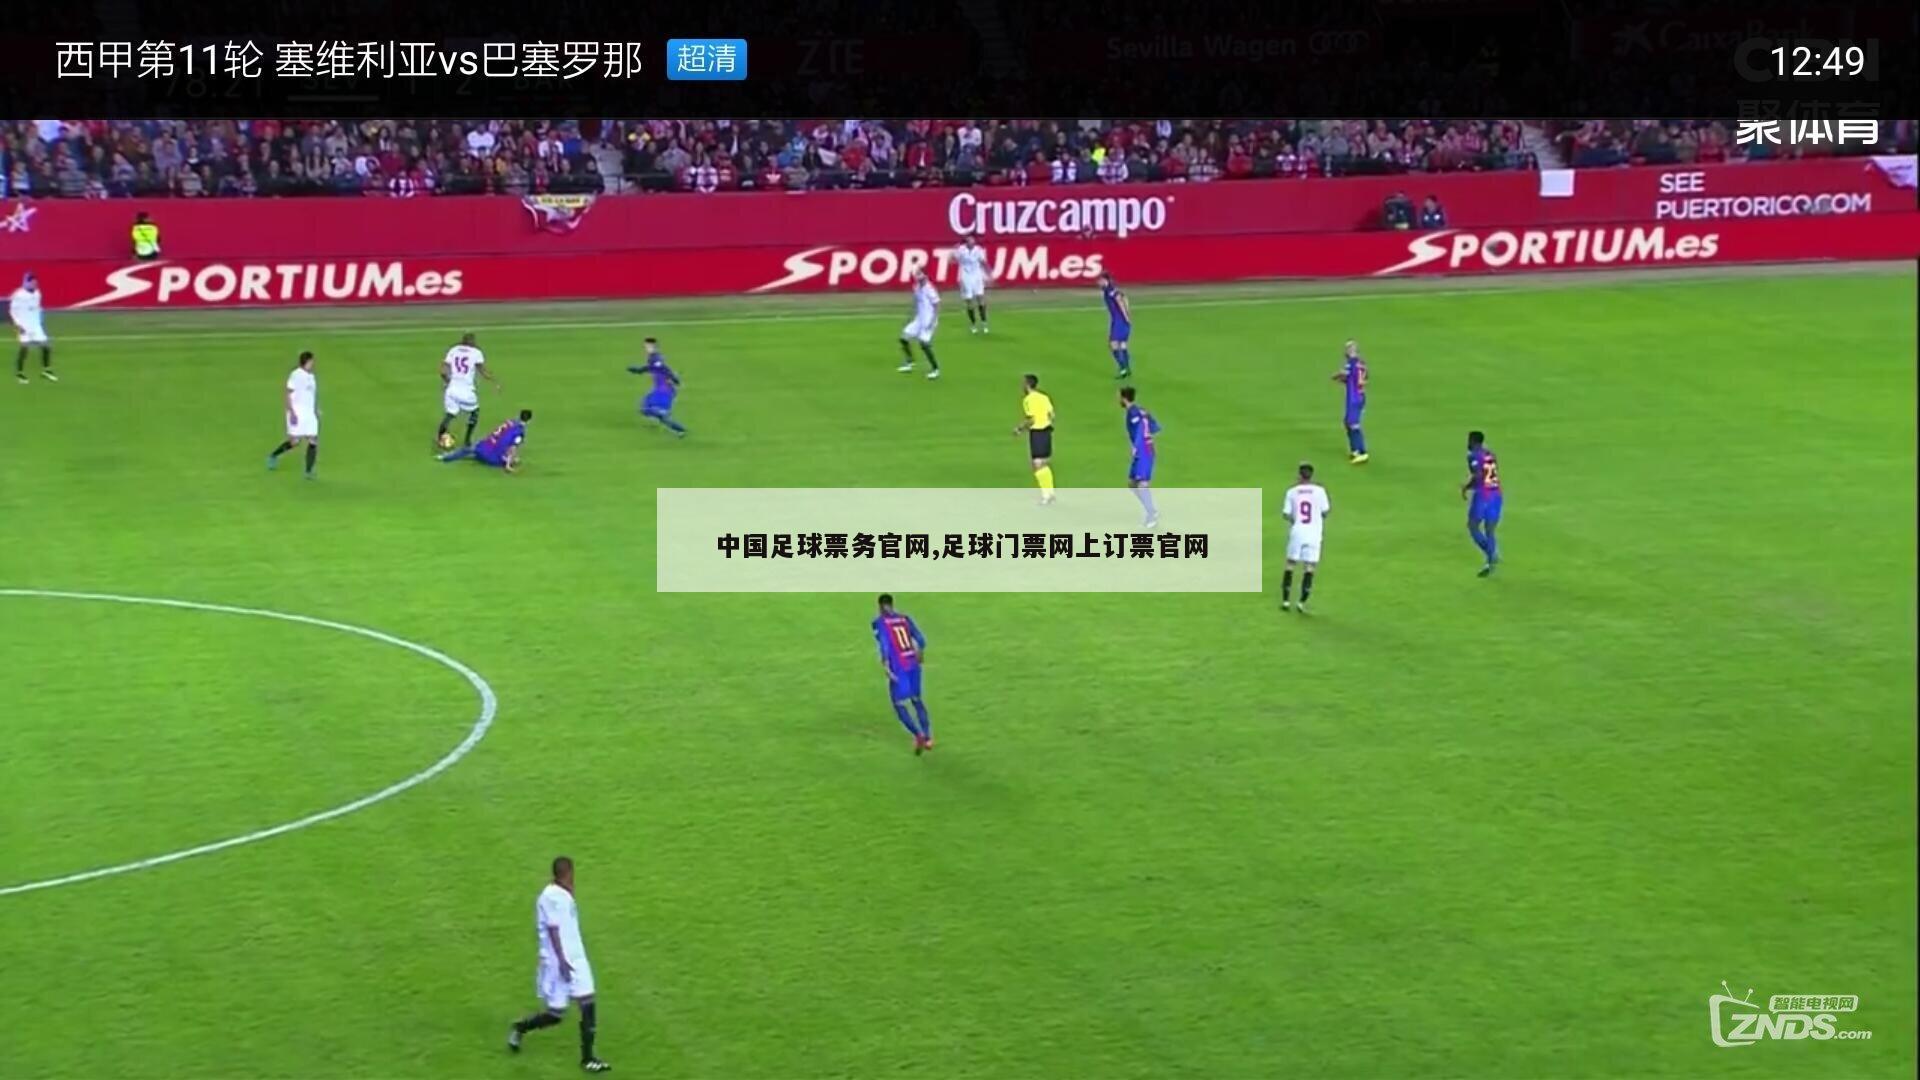 中国足球票务官网,足球门票网上订票官网